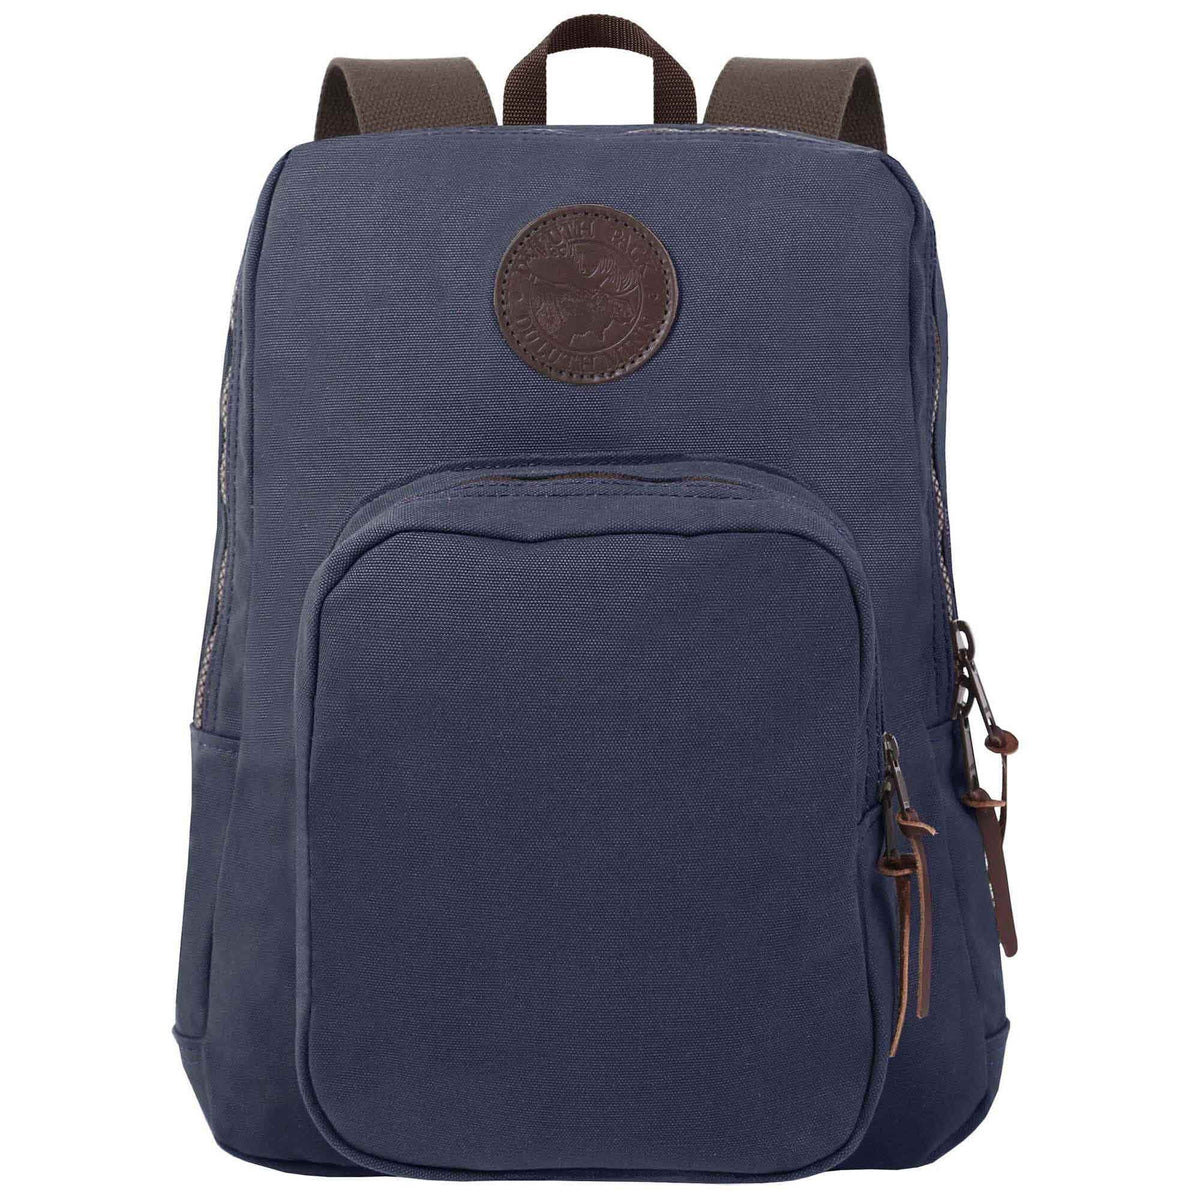 Duluth Pack Large Standard Backpack Bag